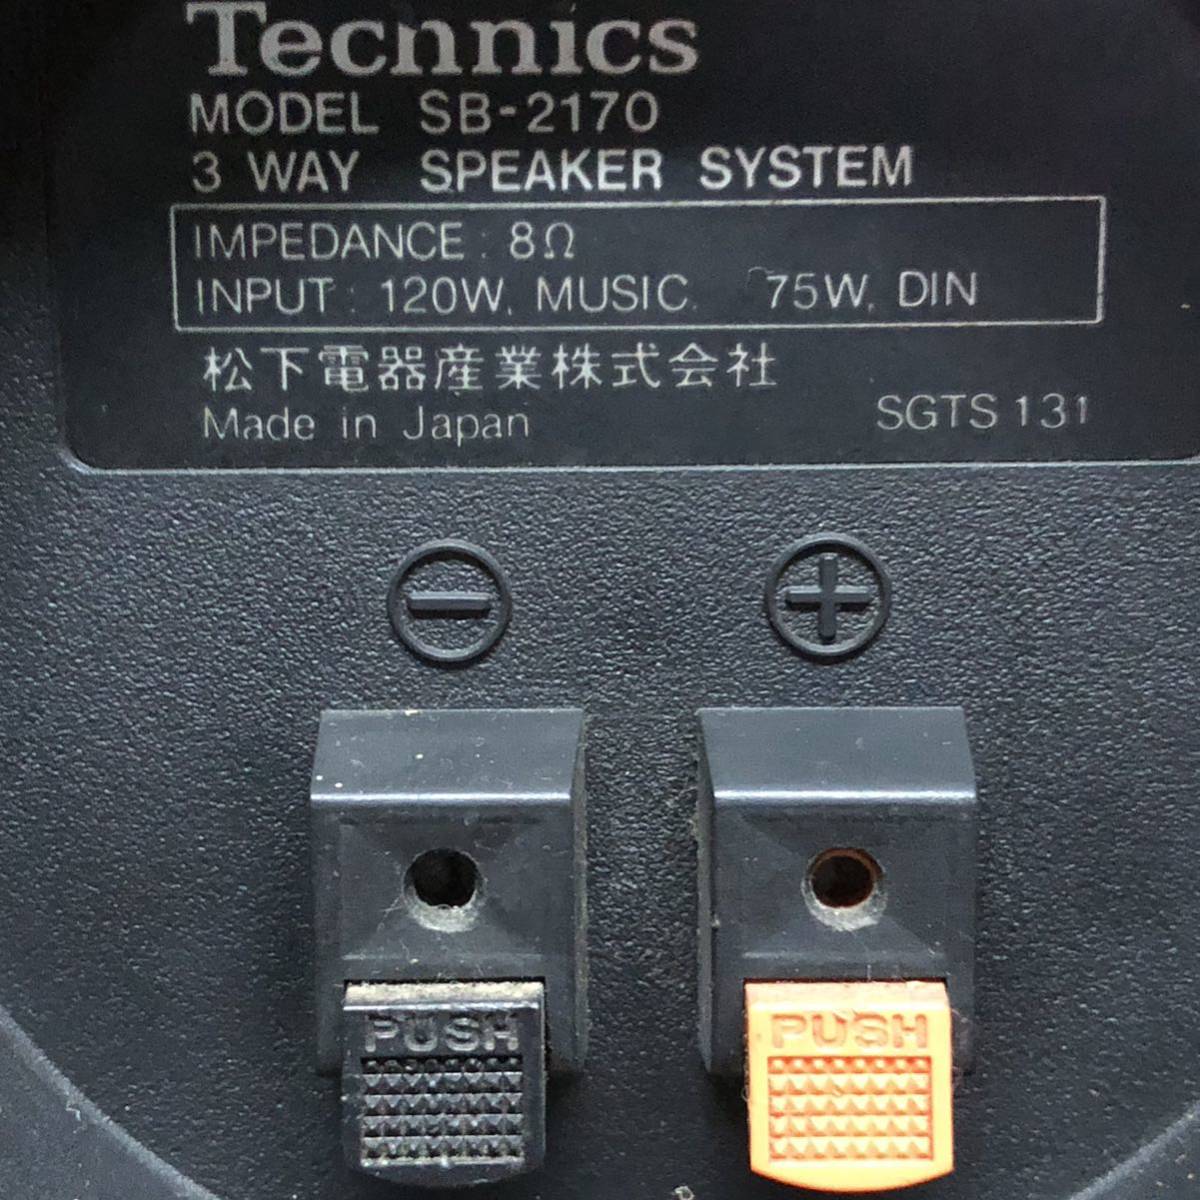 [ повторное использование ] Technics Technics SB-2170 3 way акустическая система пол type автобус зеркальный system 